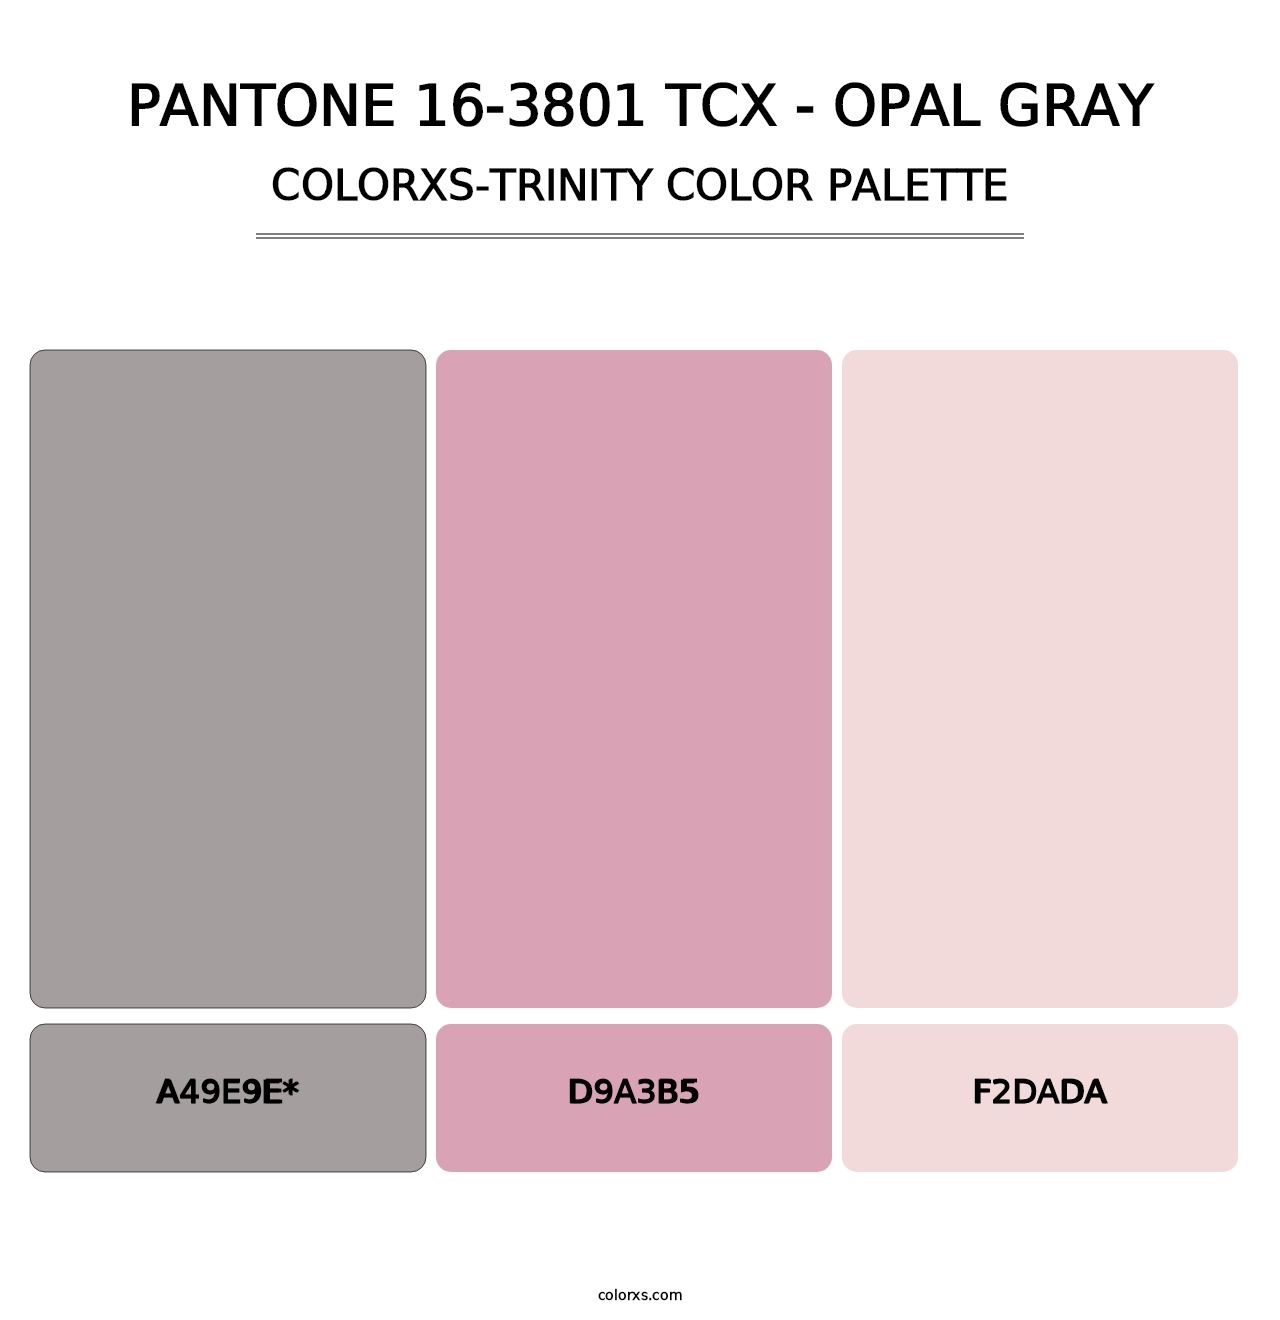 PANTONE 16-3801 TCX - Opal Gray - Colorxs Trinity Palette